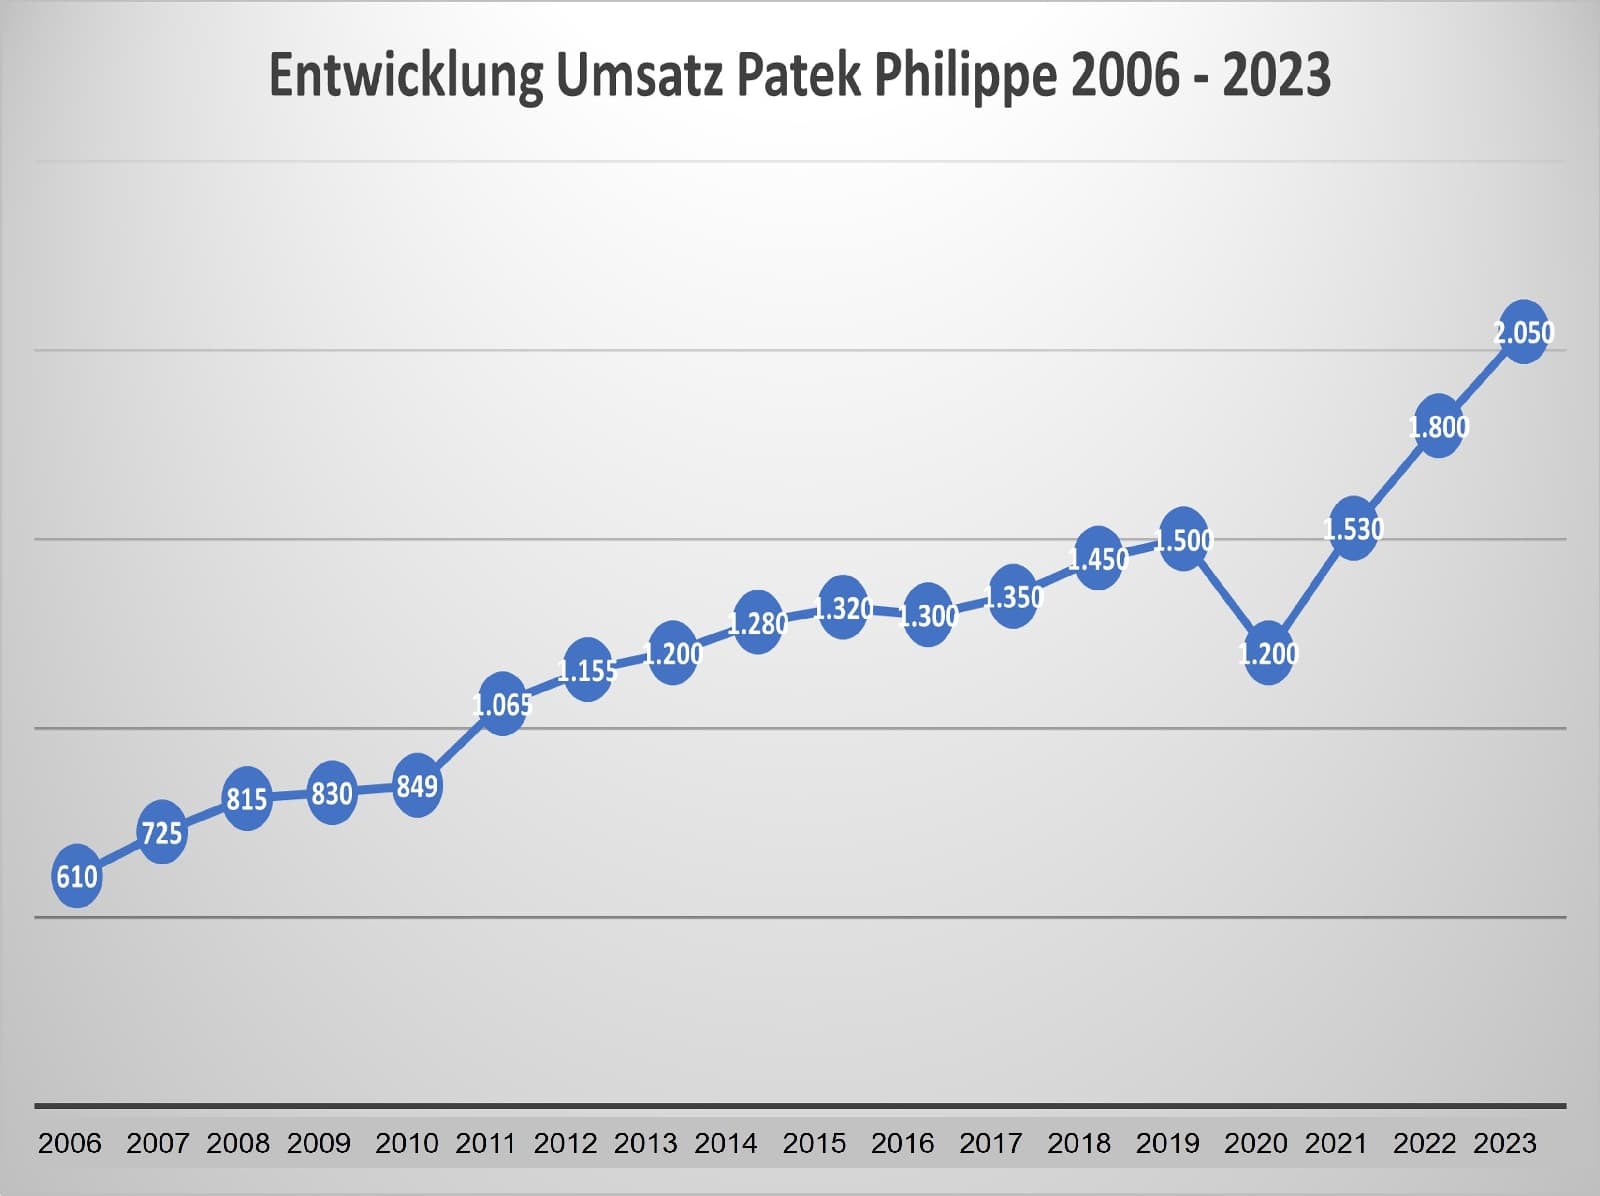 Umsatzentwicklung Patek Philippe 2006 - 2023